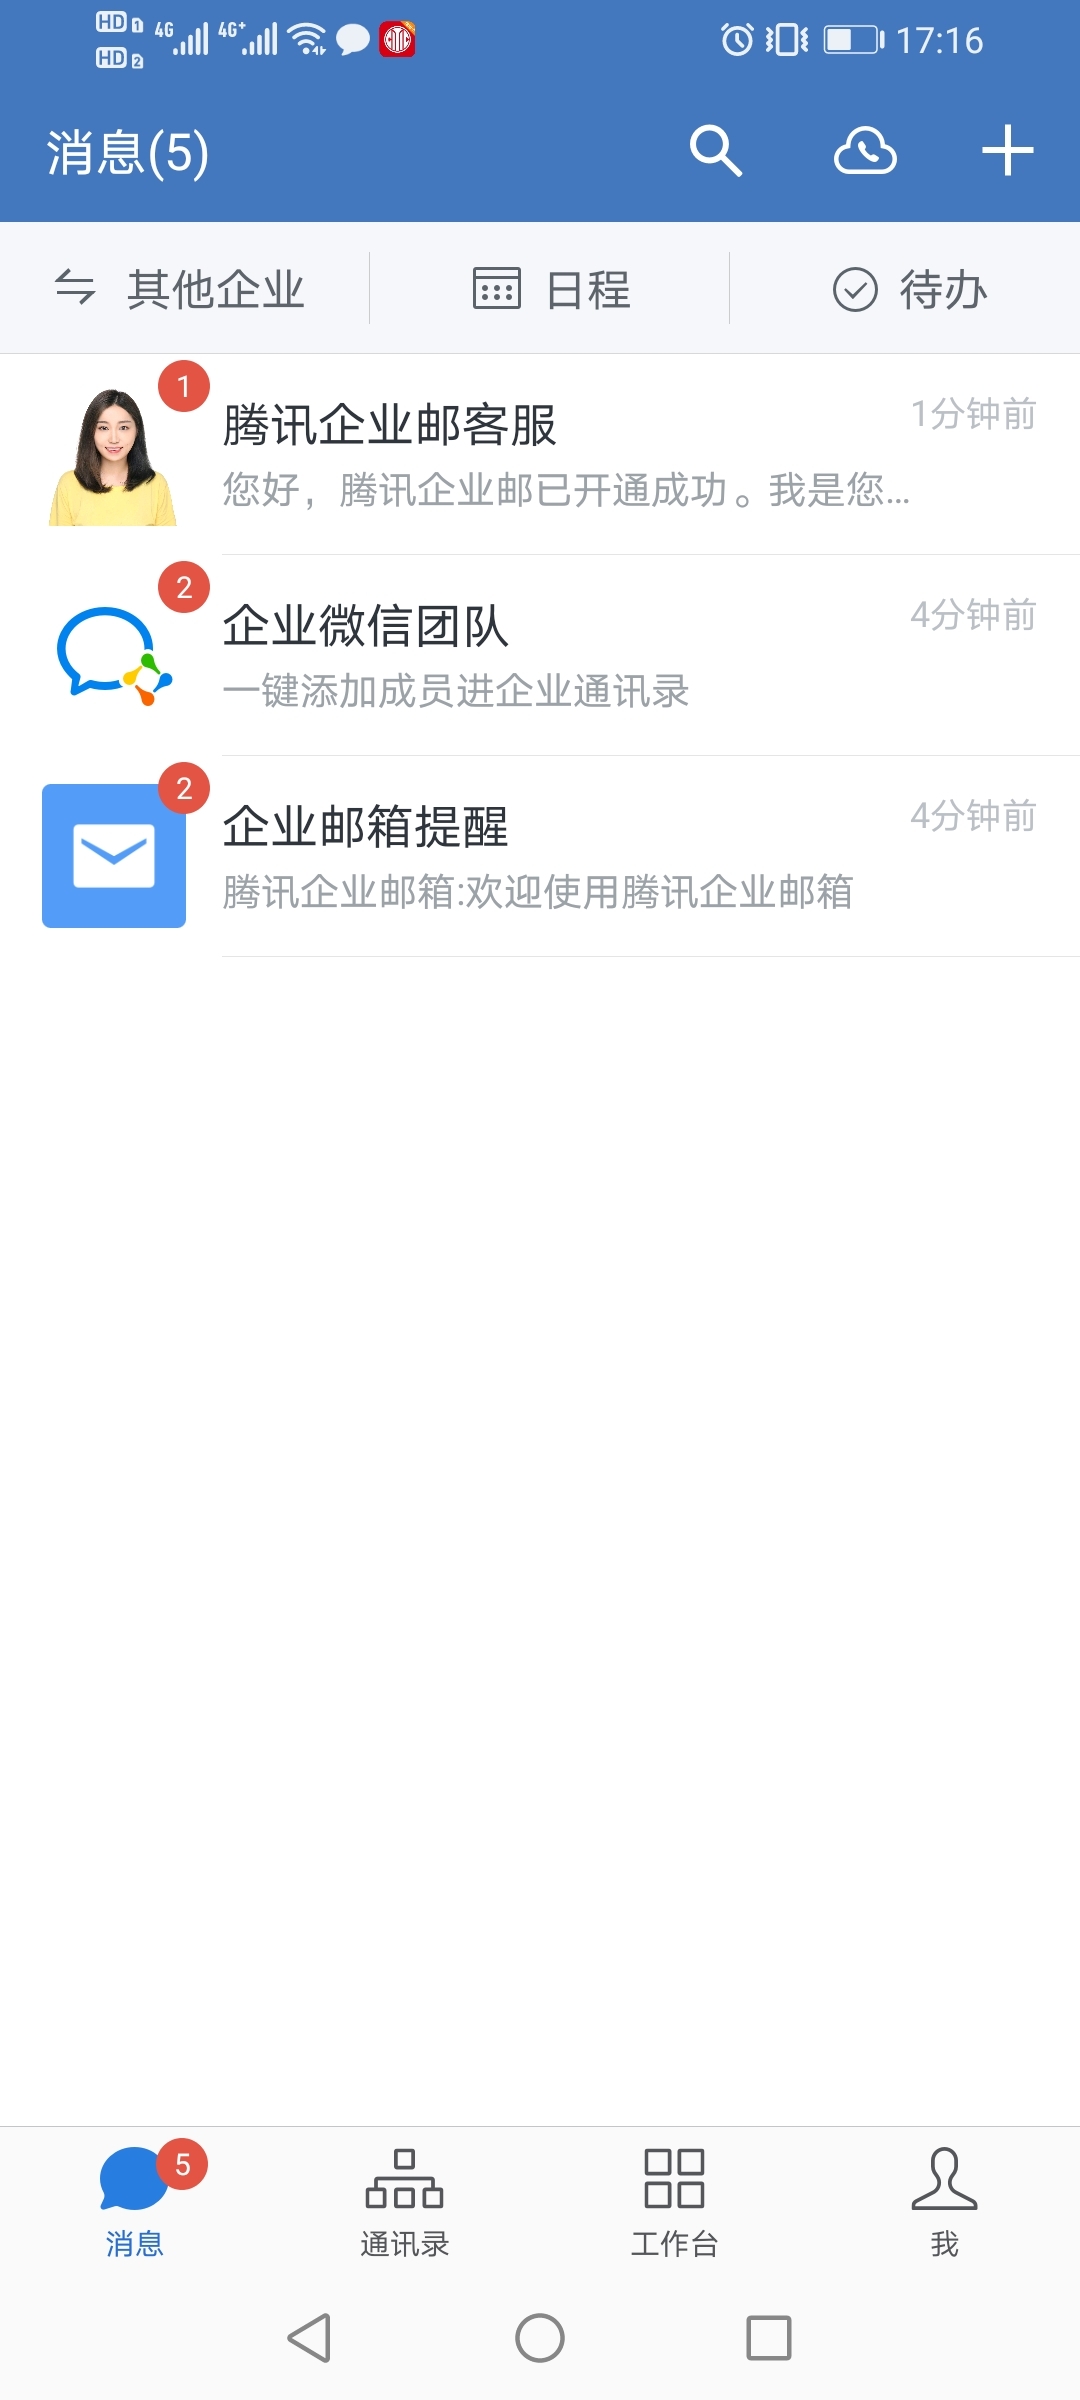 深圳企信科技